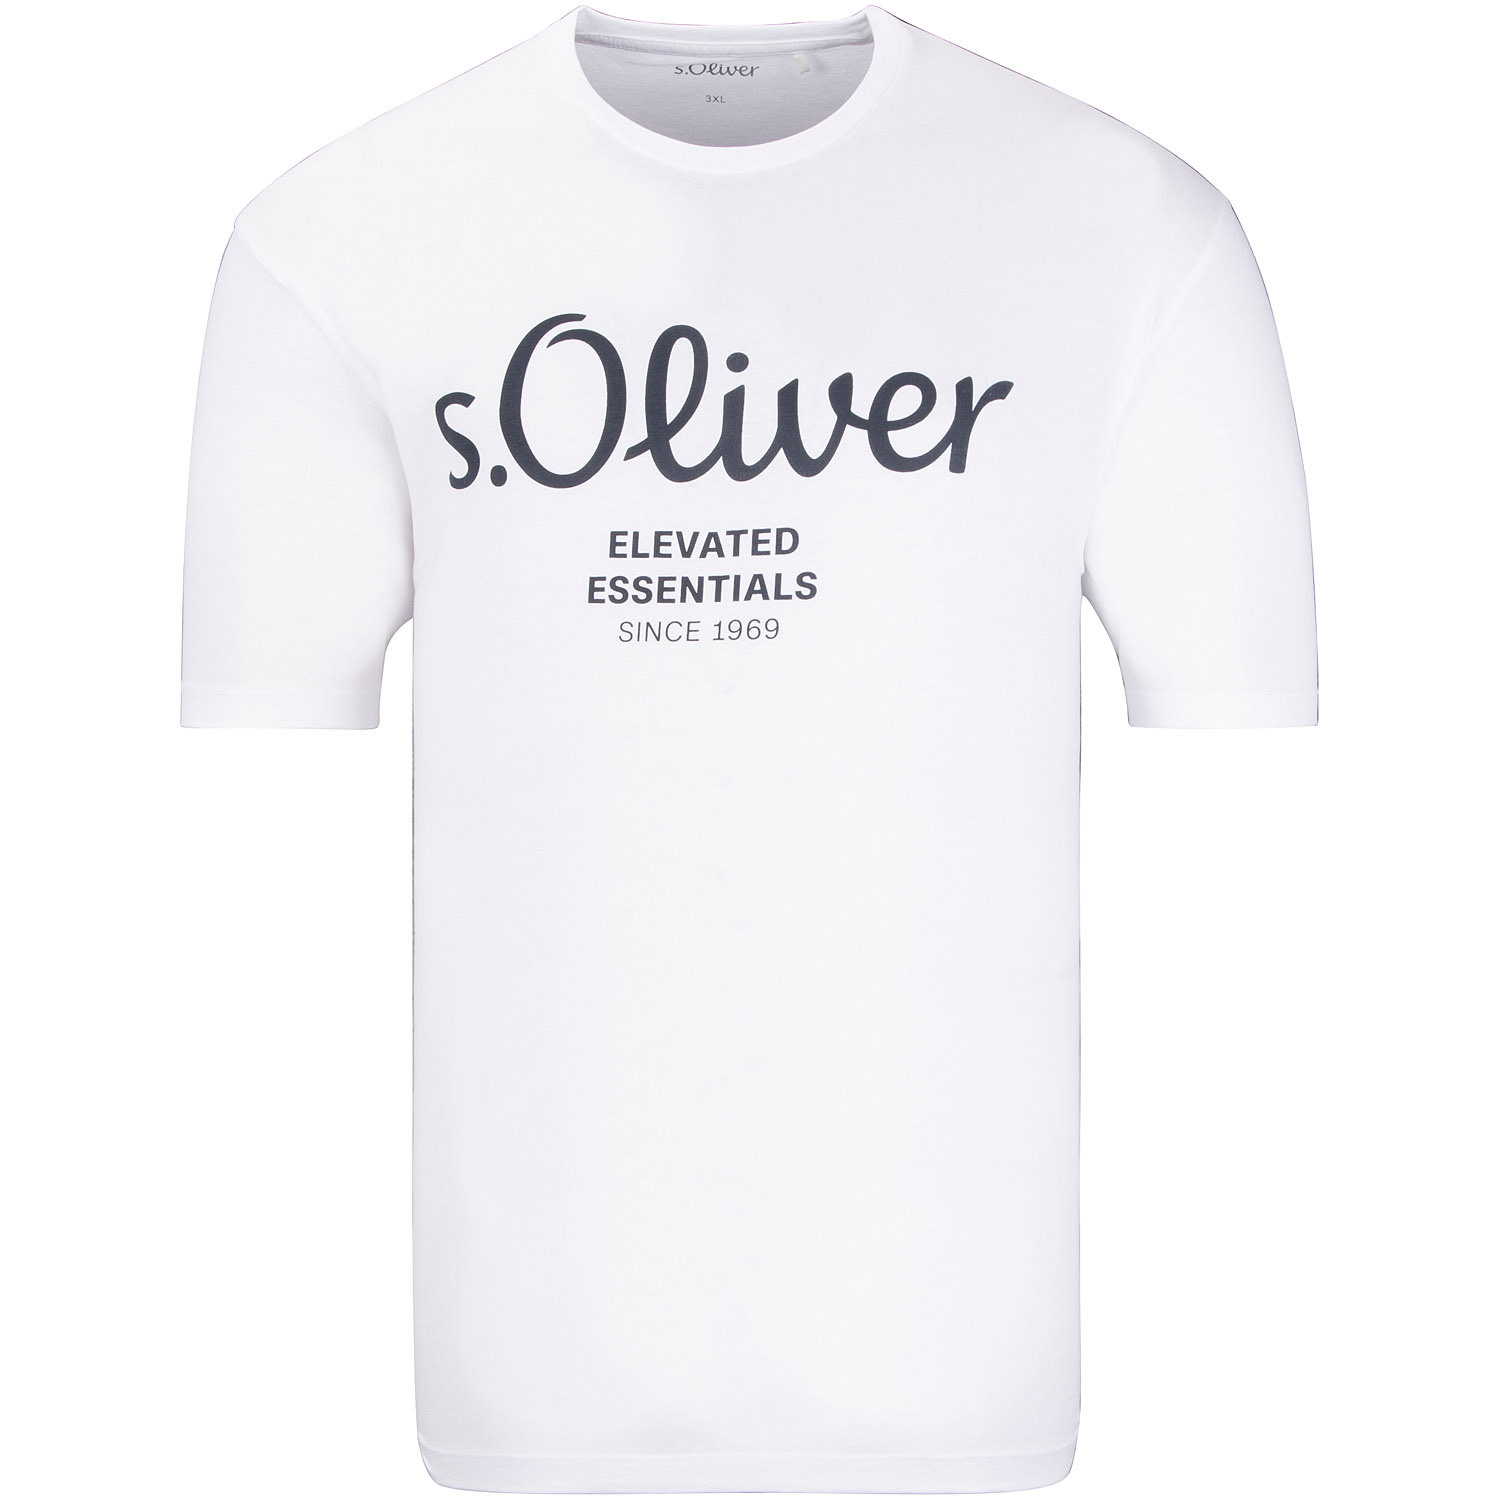 S.OLIVER T-Shirt weiß Herrenmode in Übergrößen kaufen